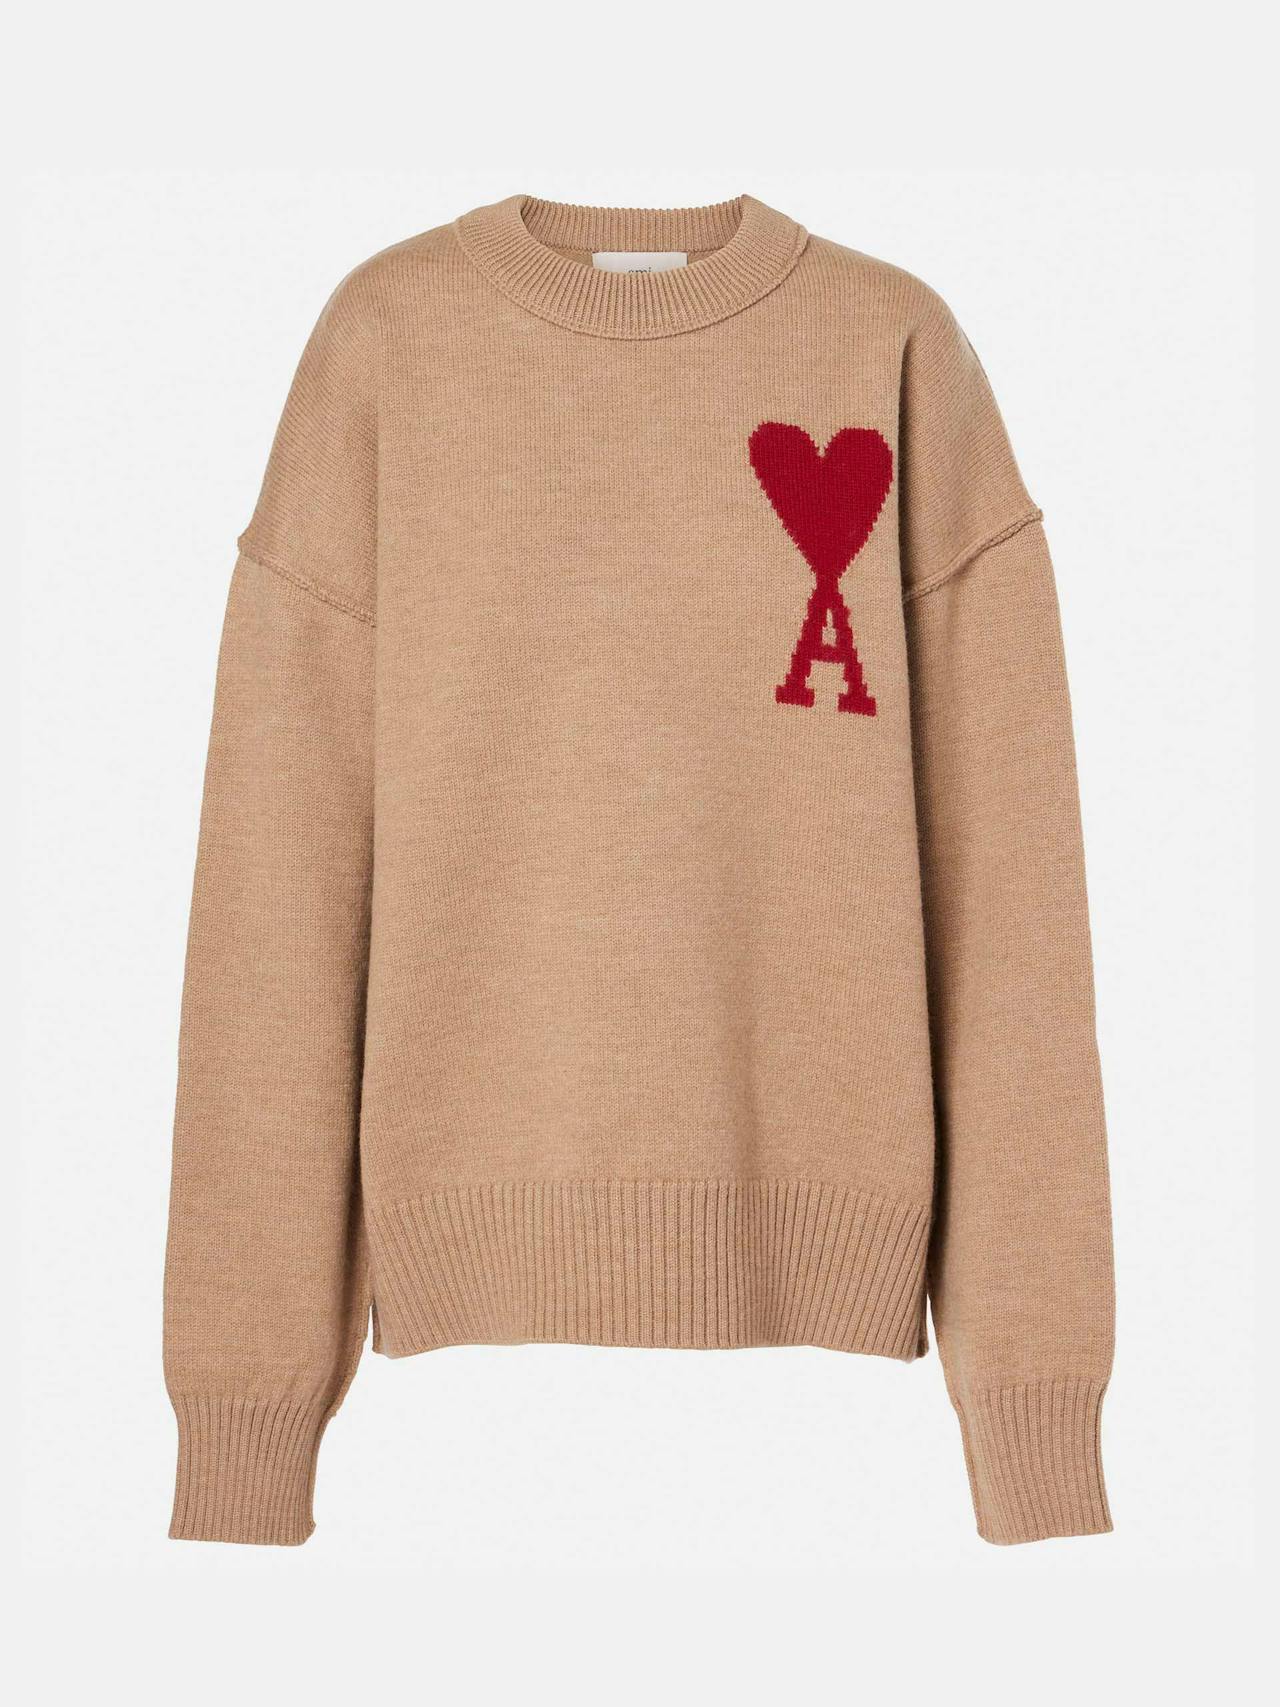 ADC wool sweater